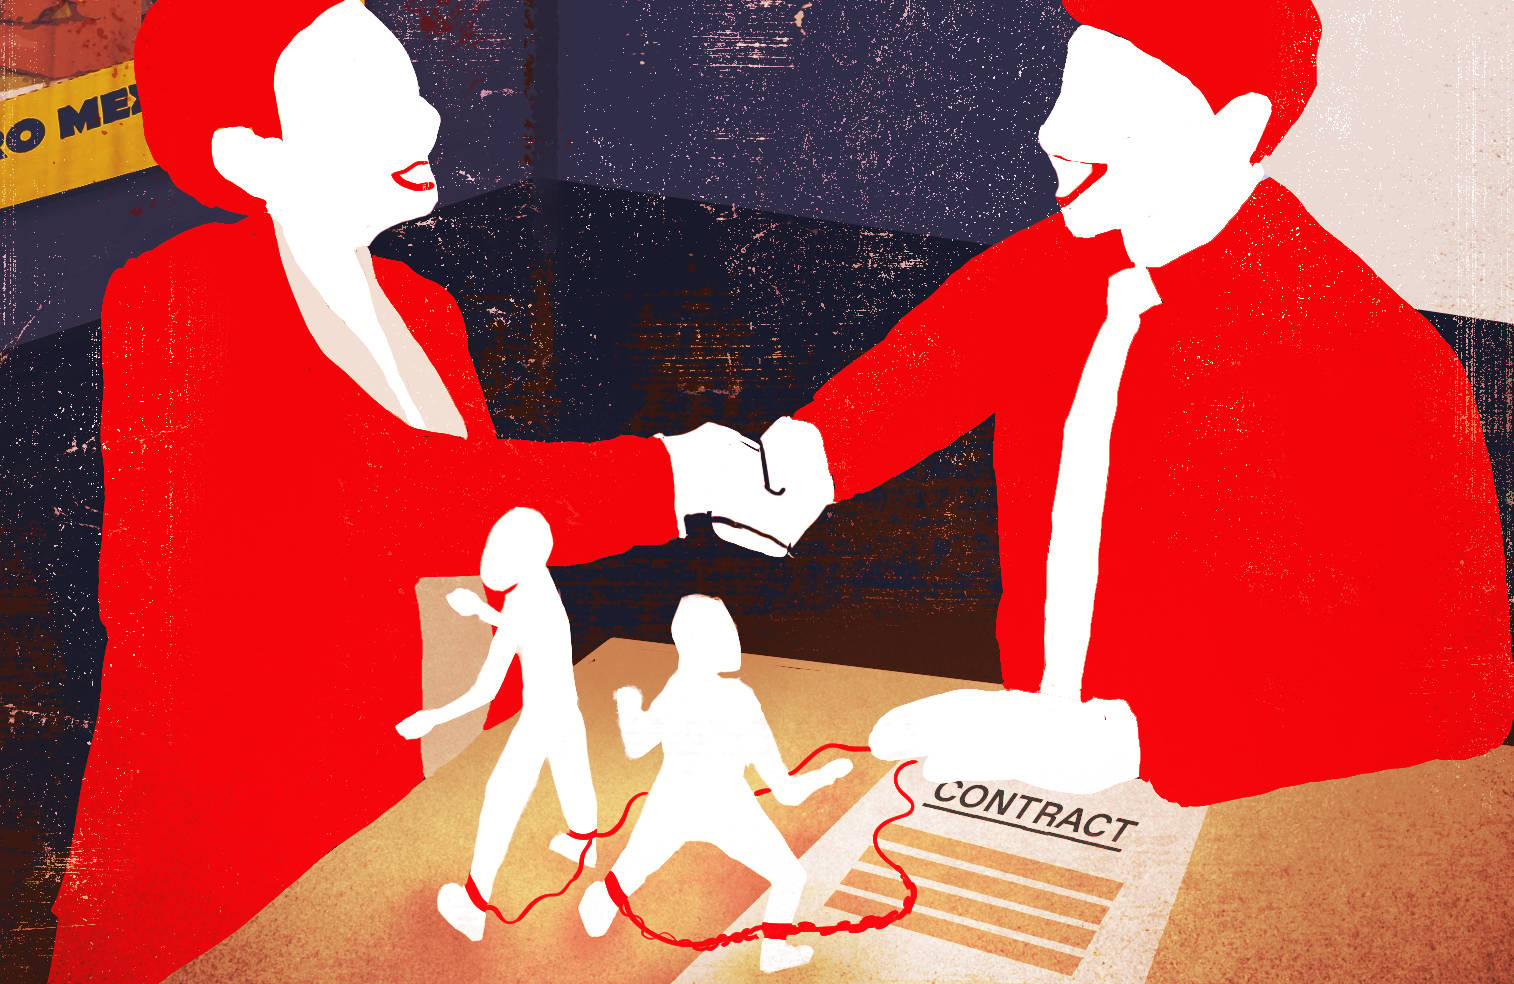 Ilustracja, przedstawiająca dwie postaci ubrane w garsonkę oraz w koszulę i krawat, podające sobie ręce nad biurkiem z dwiema postaciami w dramatycznych pozach, skutych kajdanami, prowadzącymi do ręki jednej z postaci. W tle widać plakat reklamowy "Euro Mexico Job". Handel ludźmi